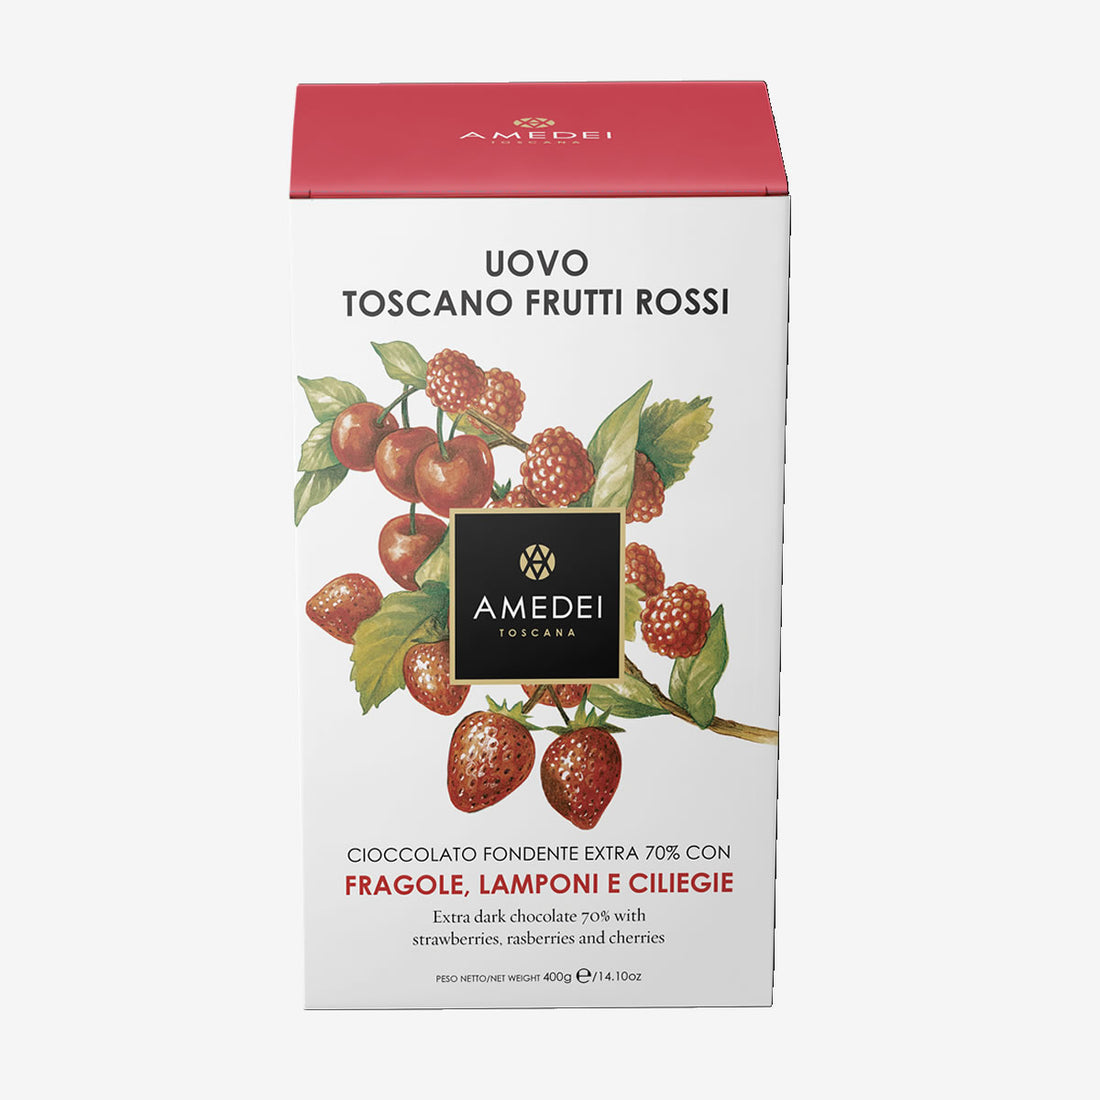 Uovo Toscano Frutti Rossi